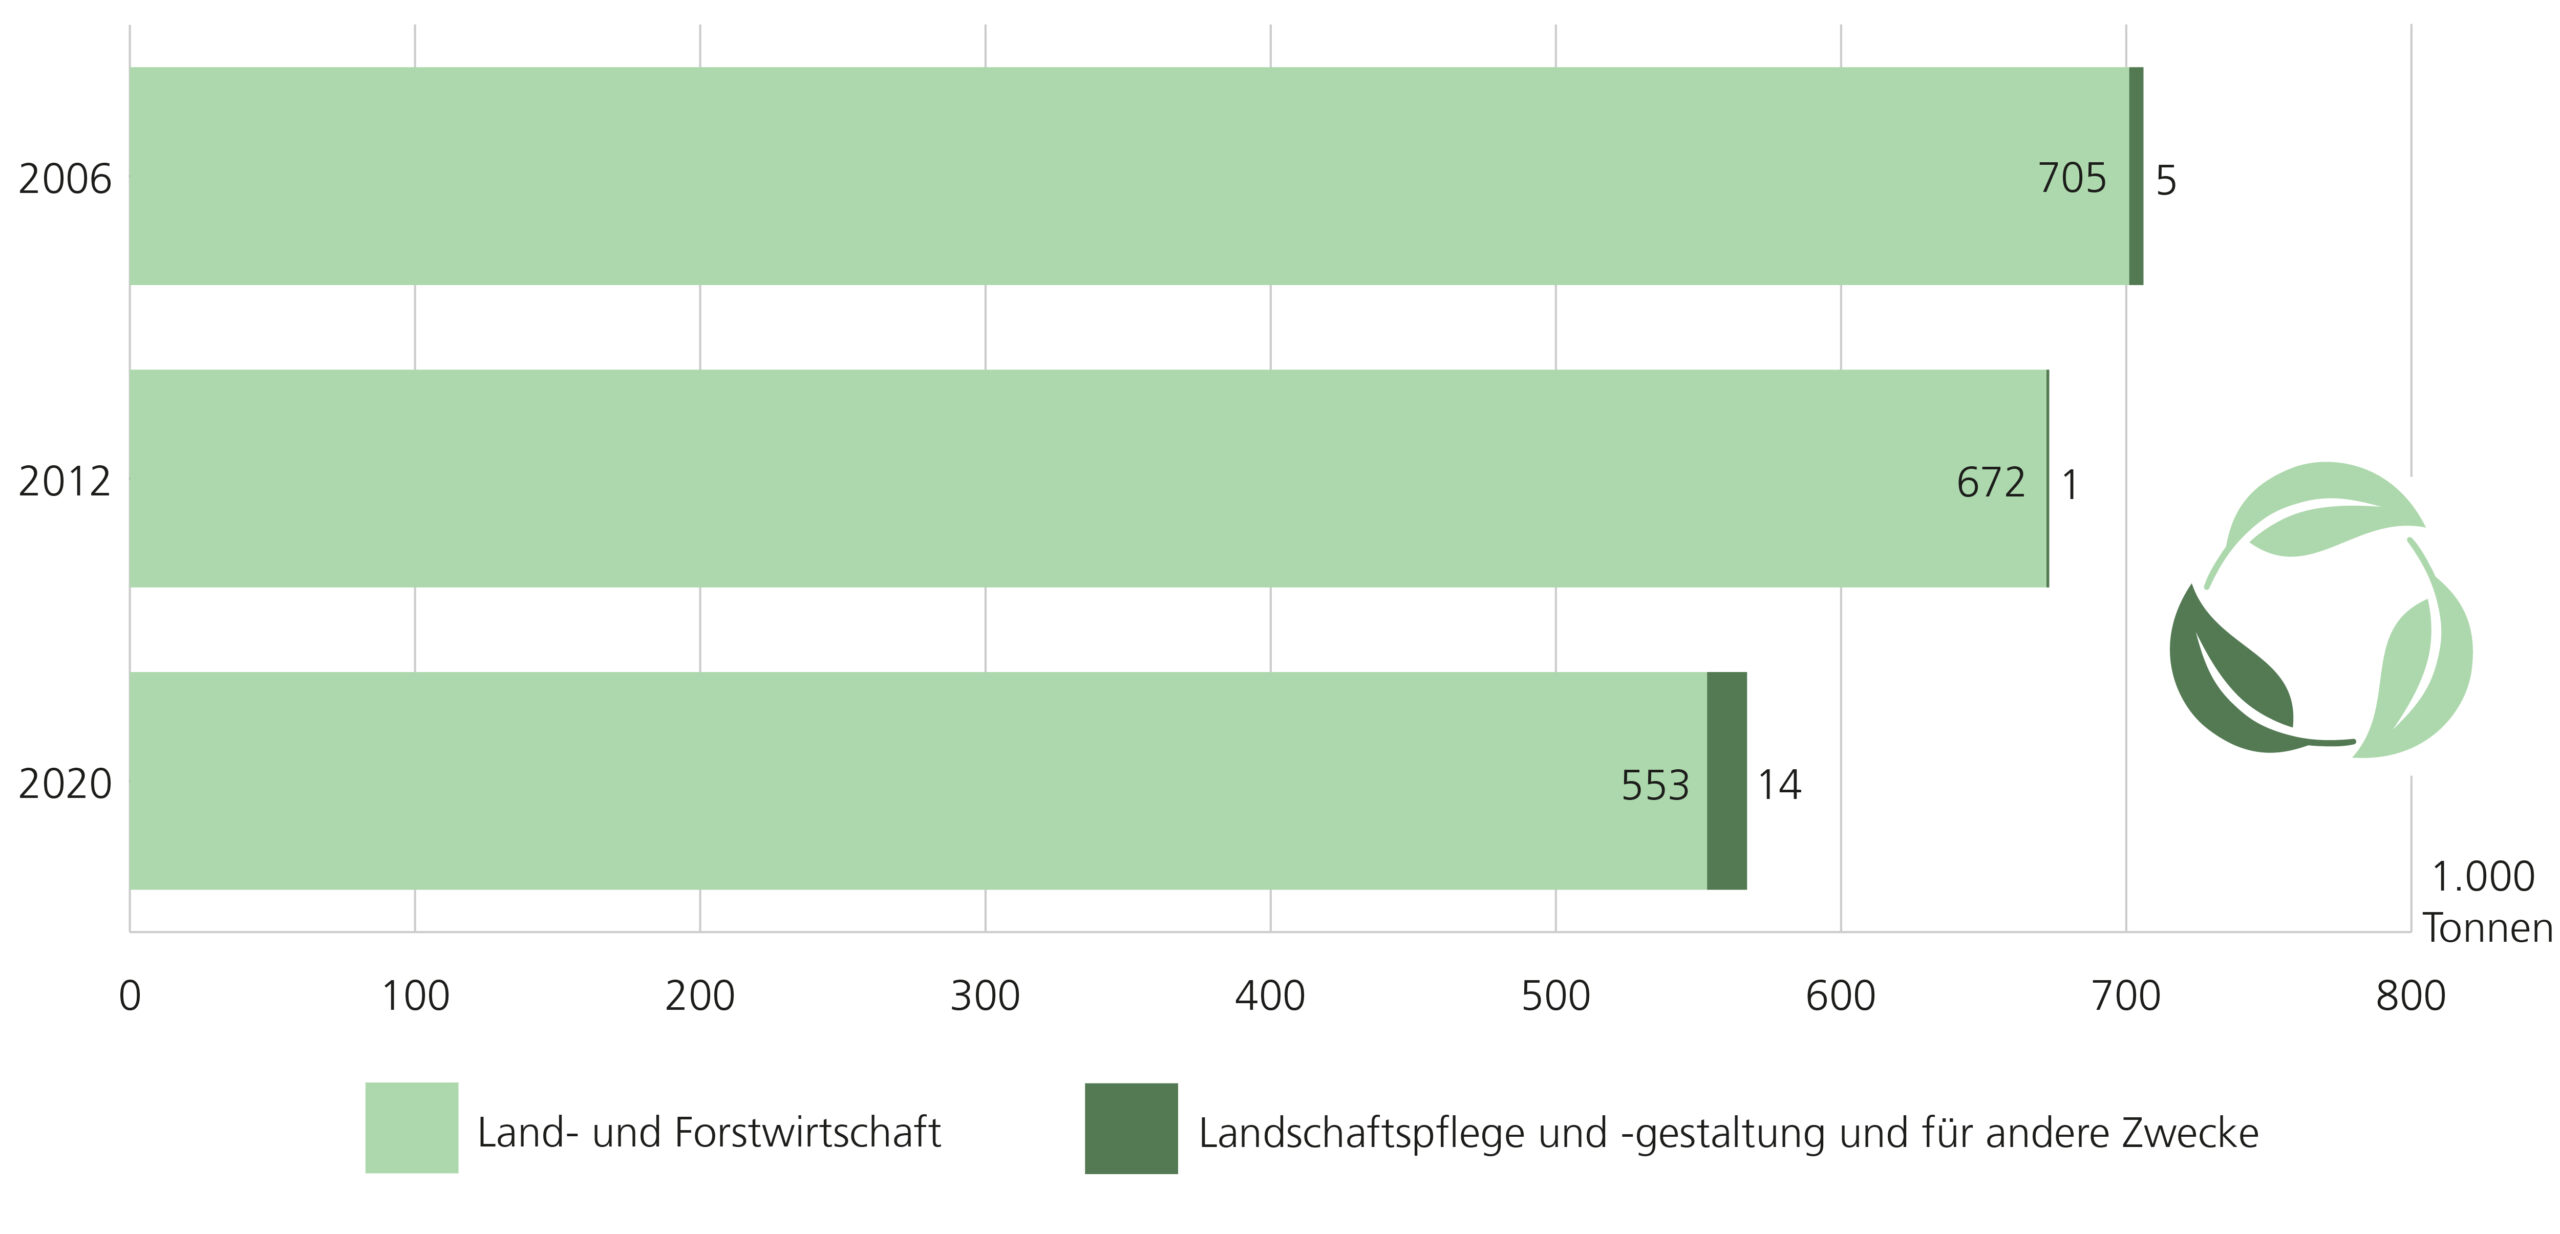 Verbleib erzeugter Gärrückstände in Niedersachsen, Vergleich der Jahre 2006, 2012 und 2020. In allen drei Jahren verblieb der Großteil der erzeugten Gärrückstände in der Land- und Forstwirtschaft, wobei der Wert mit den Jahren sank. Deutlich weniger Tonnen verblieben in der Landschaftspflege und -gestaltung bzw. für andere Zwecke: 2006 waren es 5.000 Tonnen, 1.000 Tonnen im Jahr 2012 und im Jahr 2020 waren es 14.000 Tonnen.